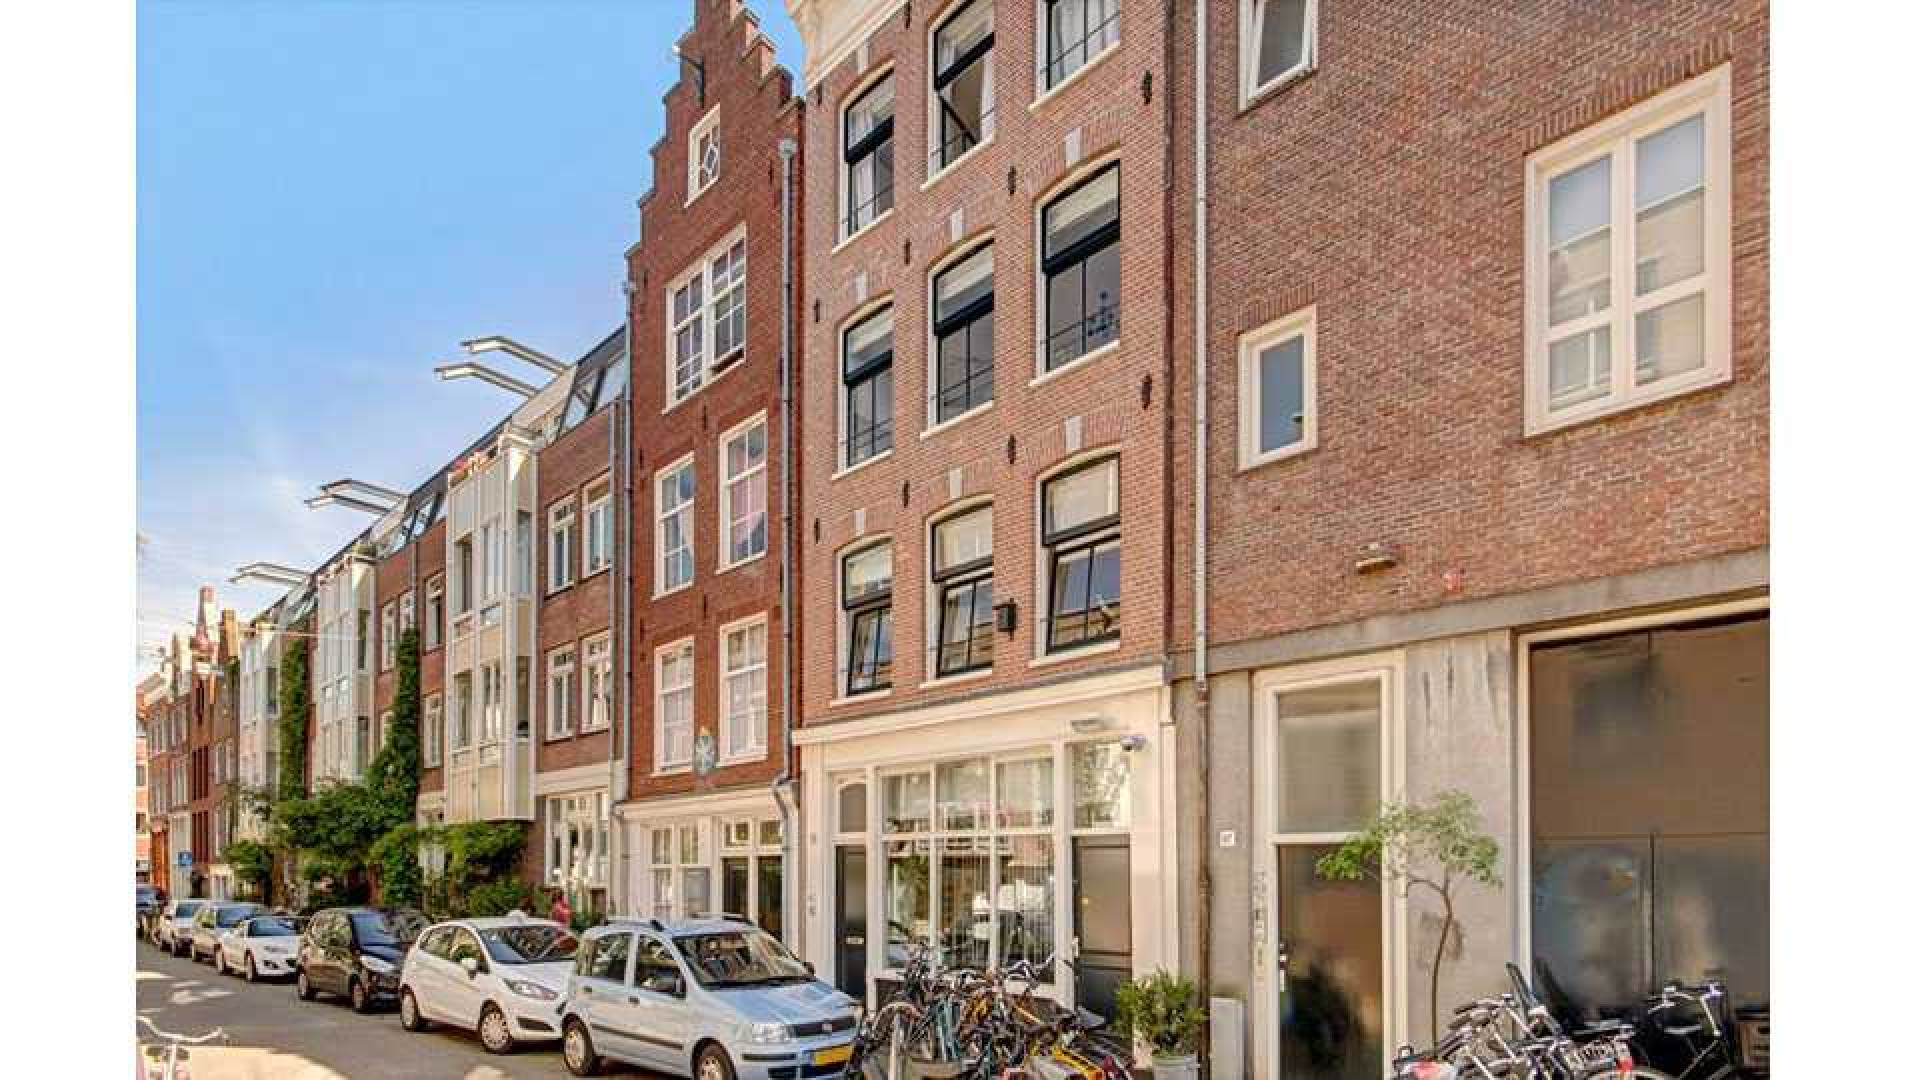 Stacey Rookhuizen verkoopt haar mini penthouse zwaar boven de vraagprijs. Zie foto's 2